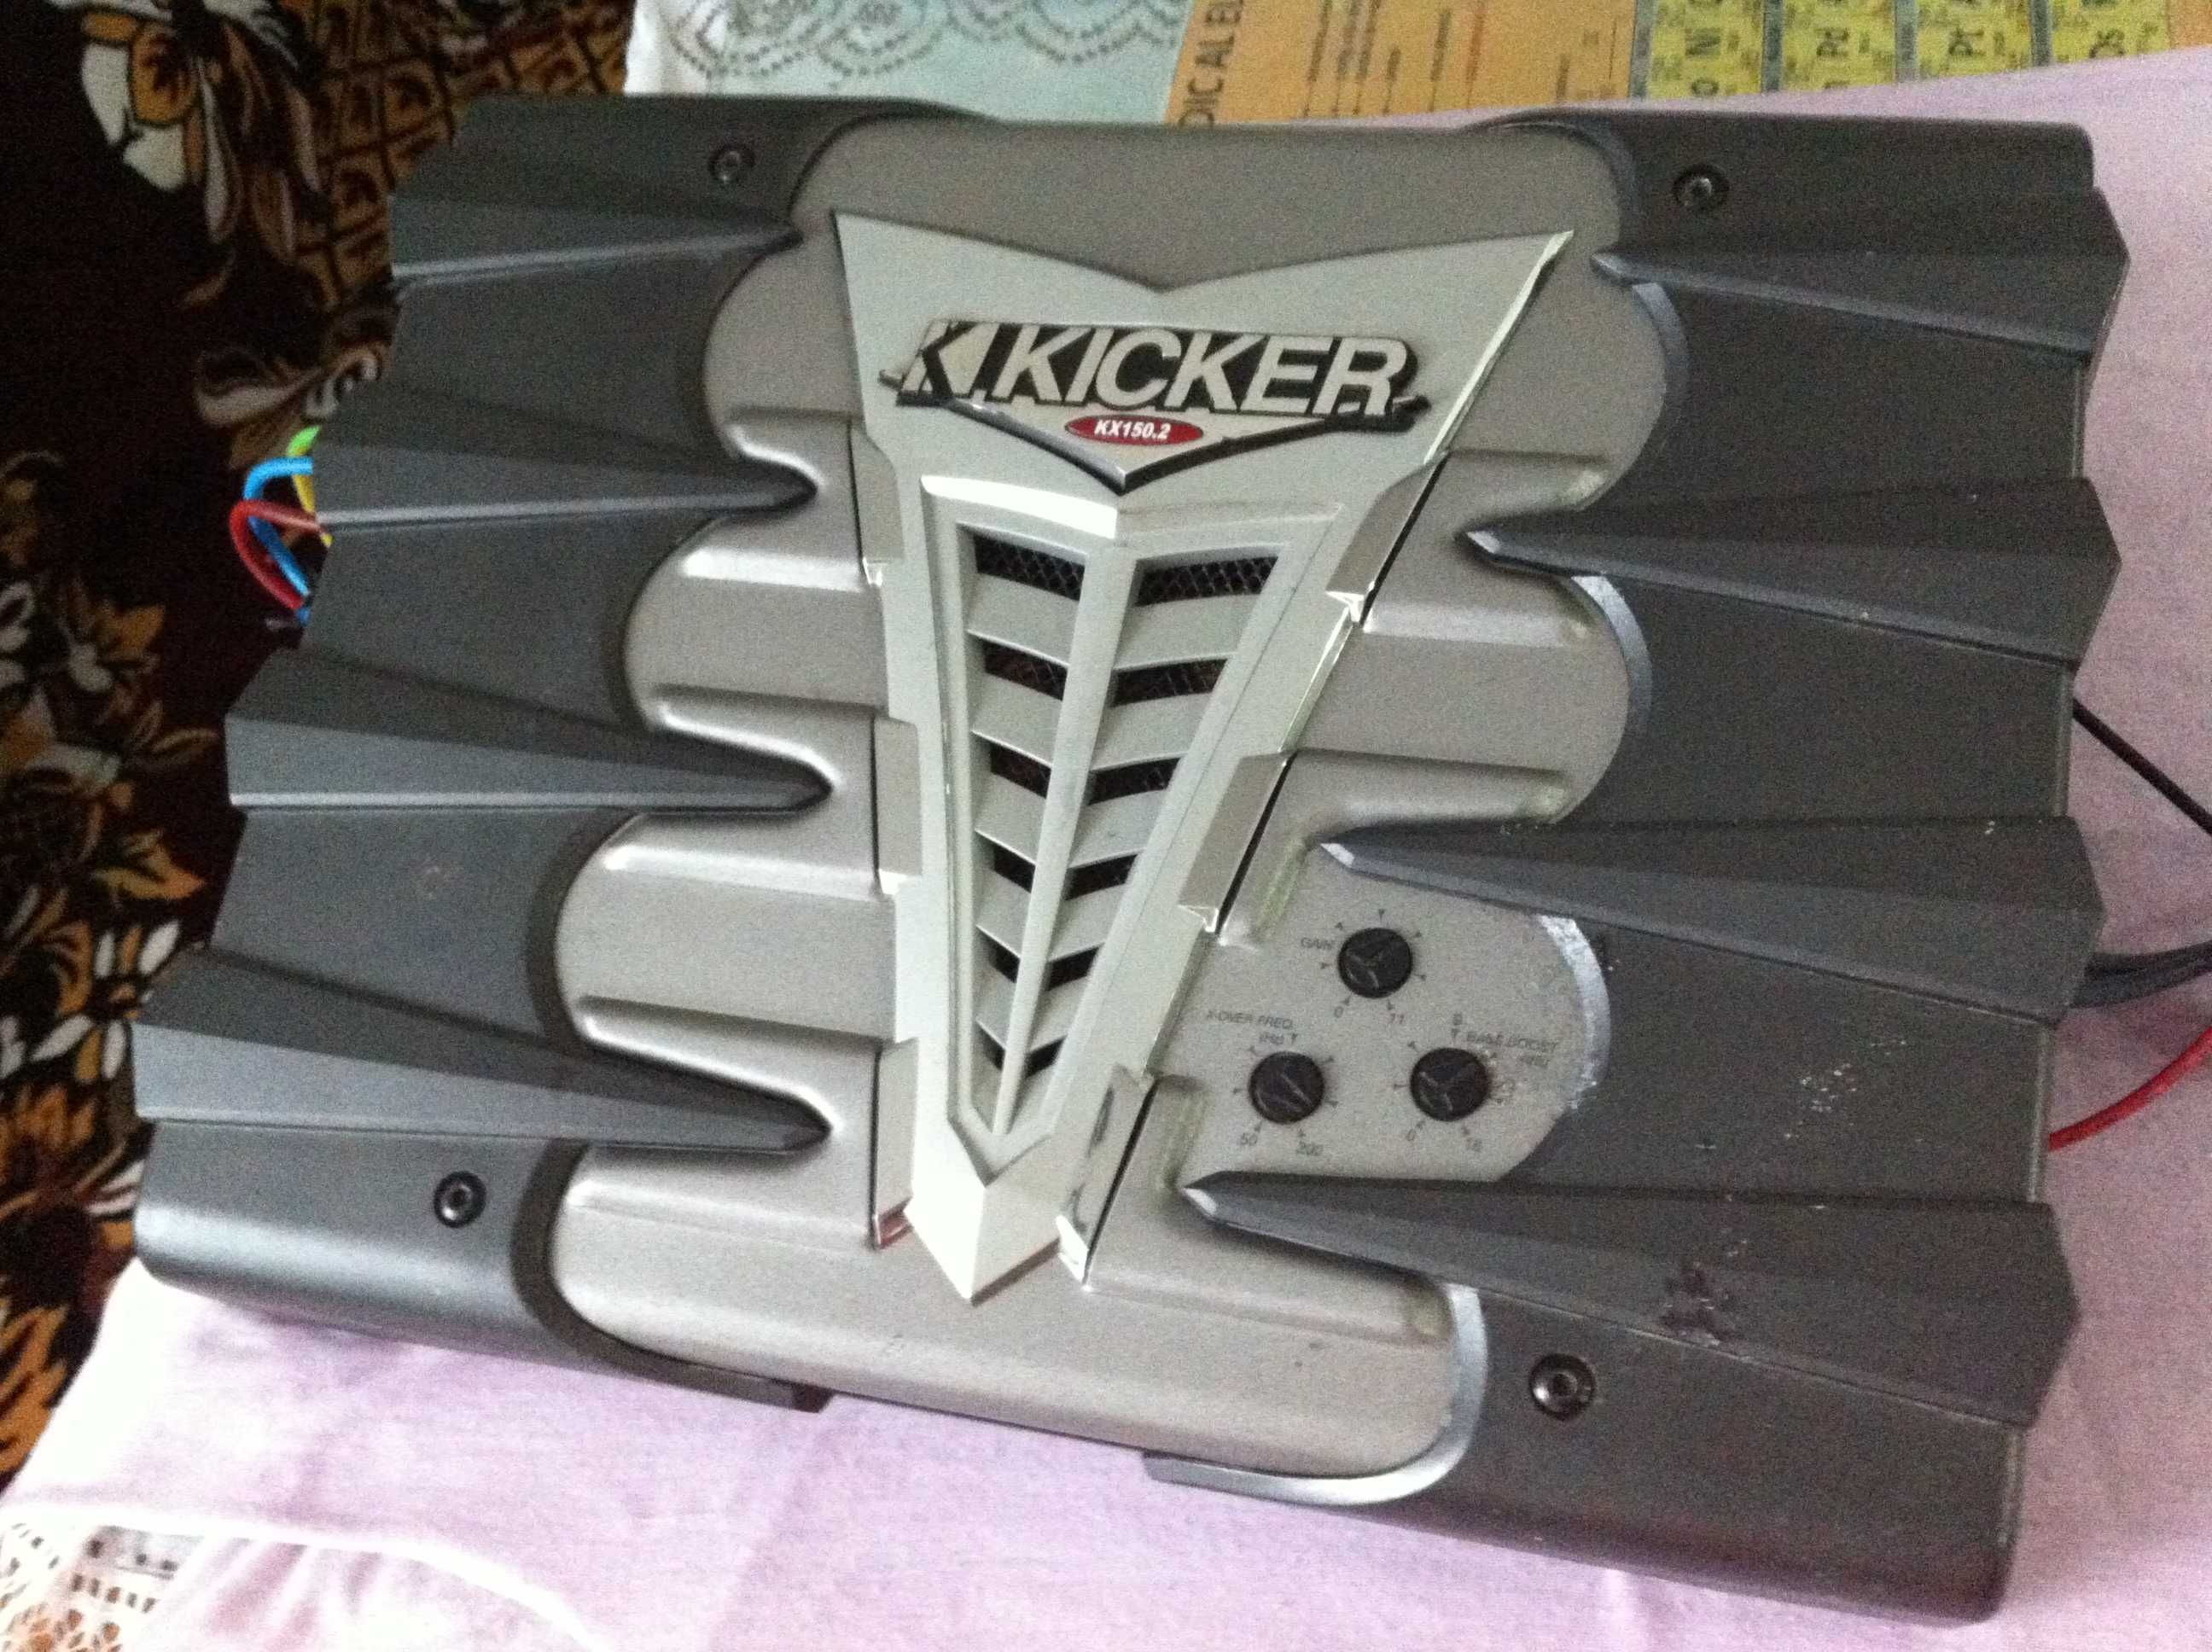 Amplificator Kicker max 600W hertz focal audison pioneer statie